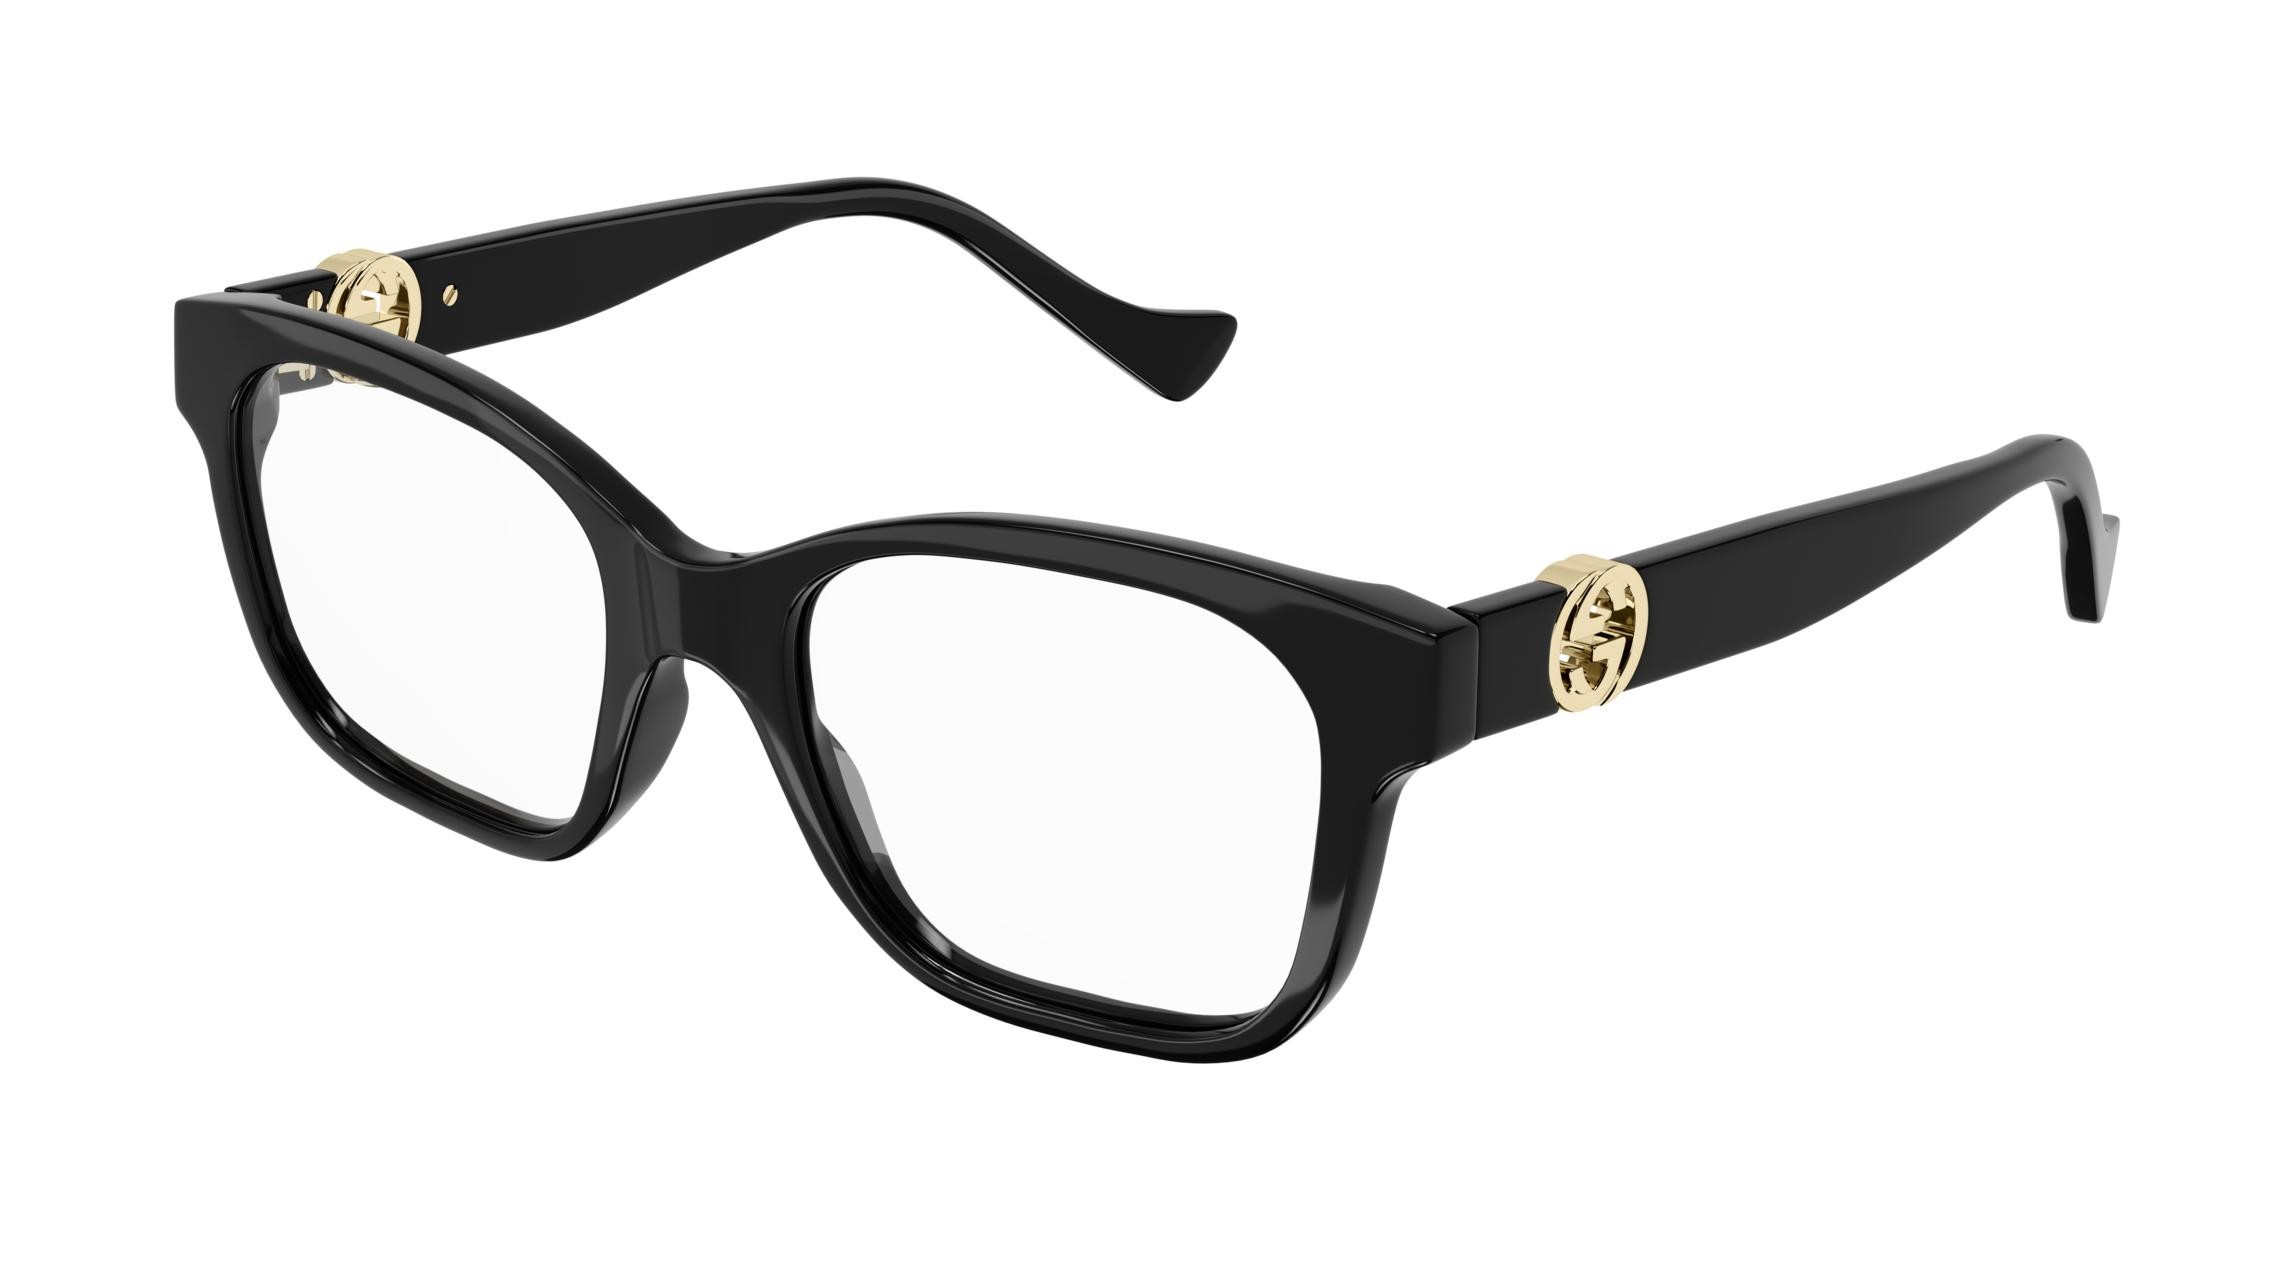 agencia borde página Estás gafas de Lujo te marcarán la diferencia combinandolas con tu look más  exclusivo. Las gafas Gucci presentan extravagancia,